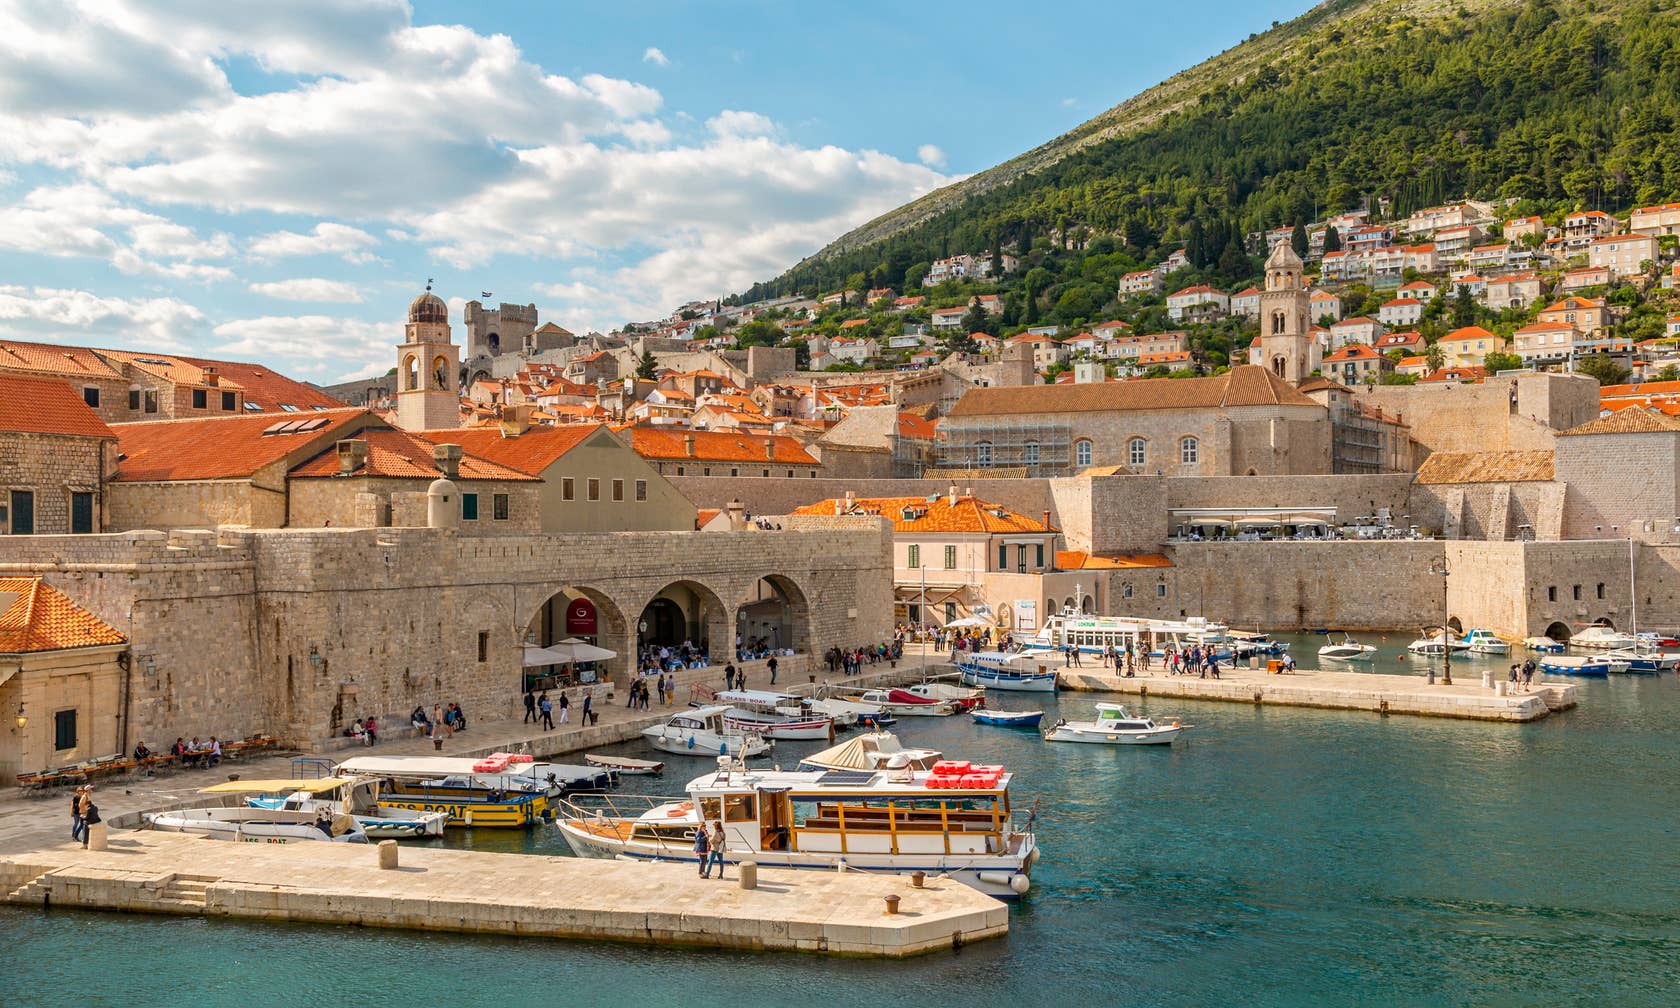 Sewa tempat di Dubrovnik